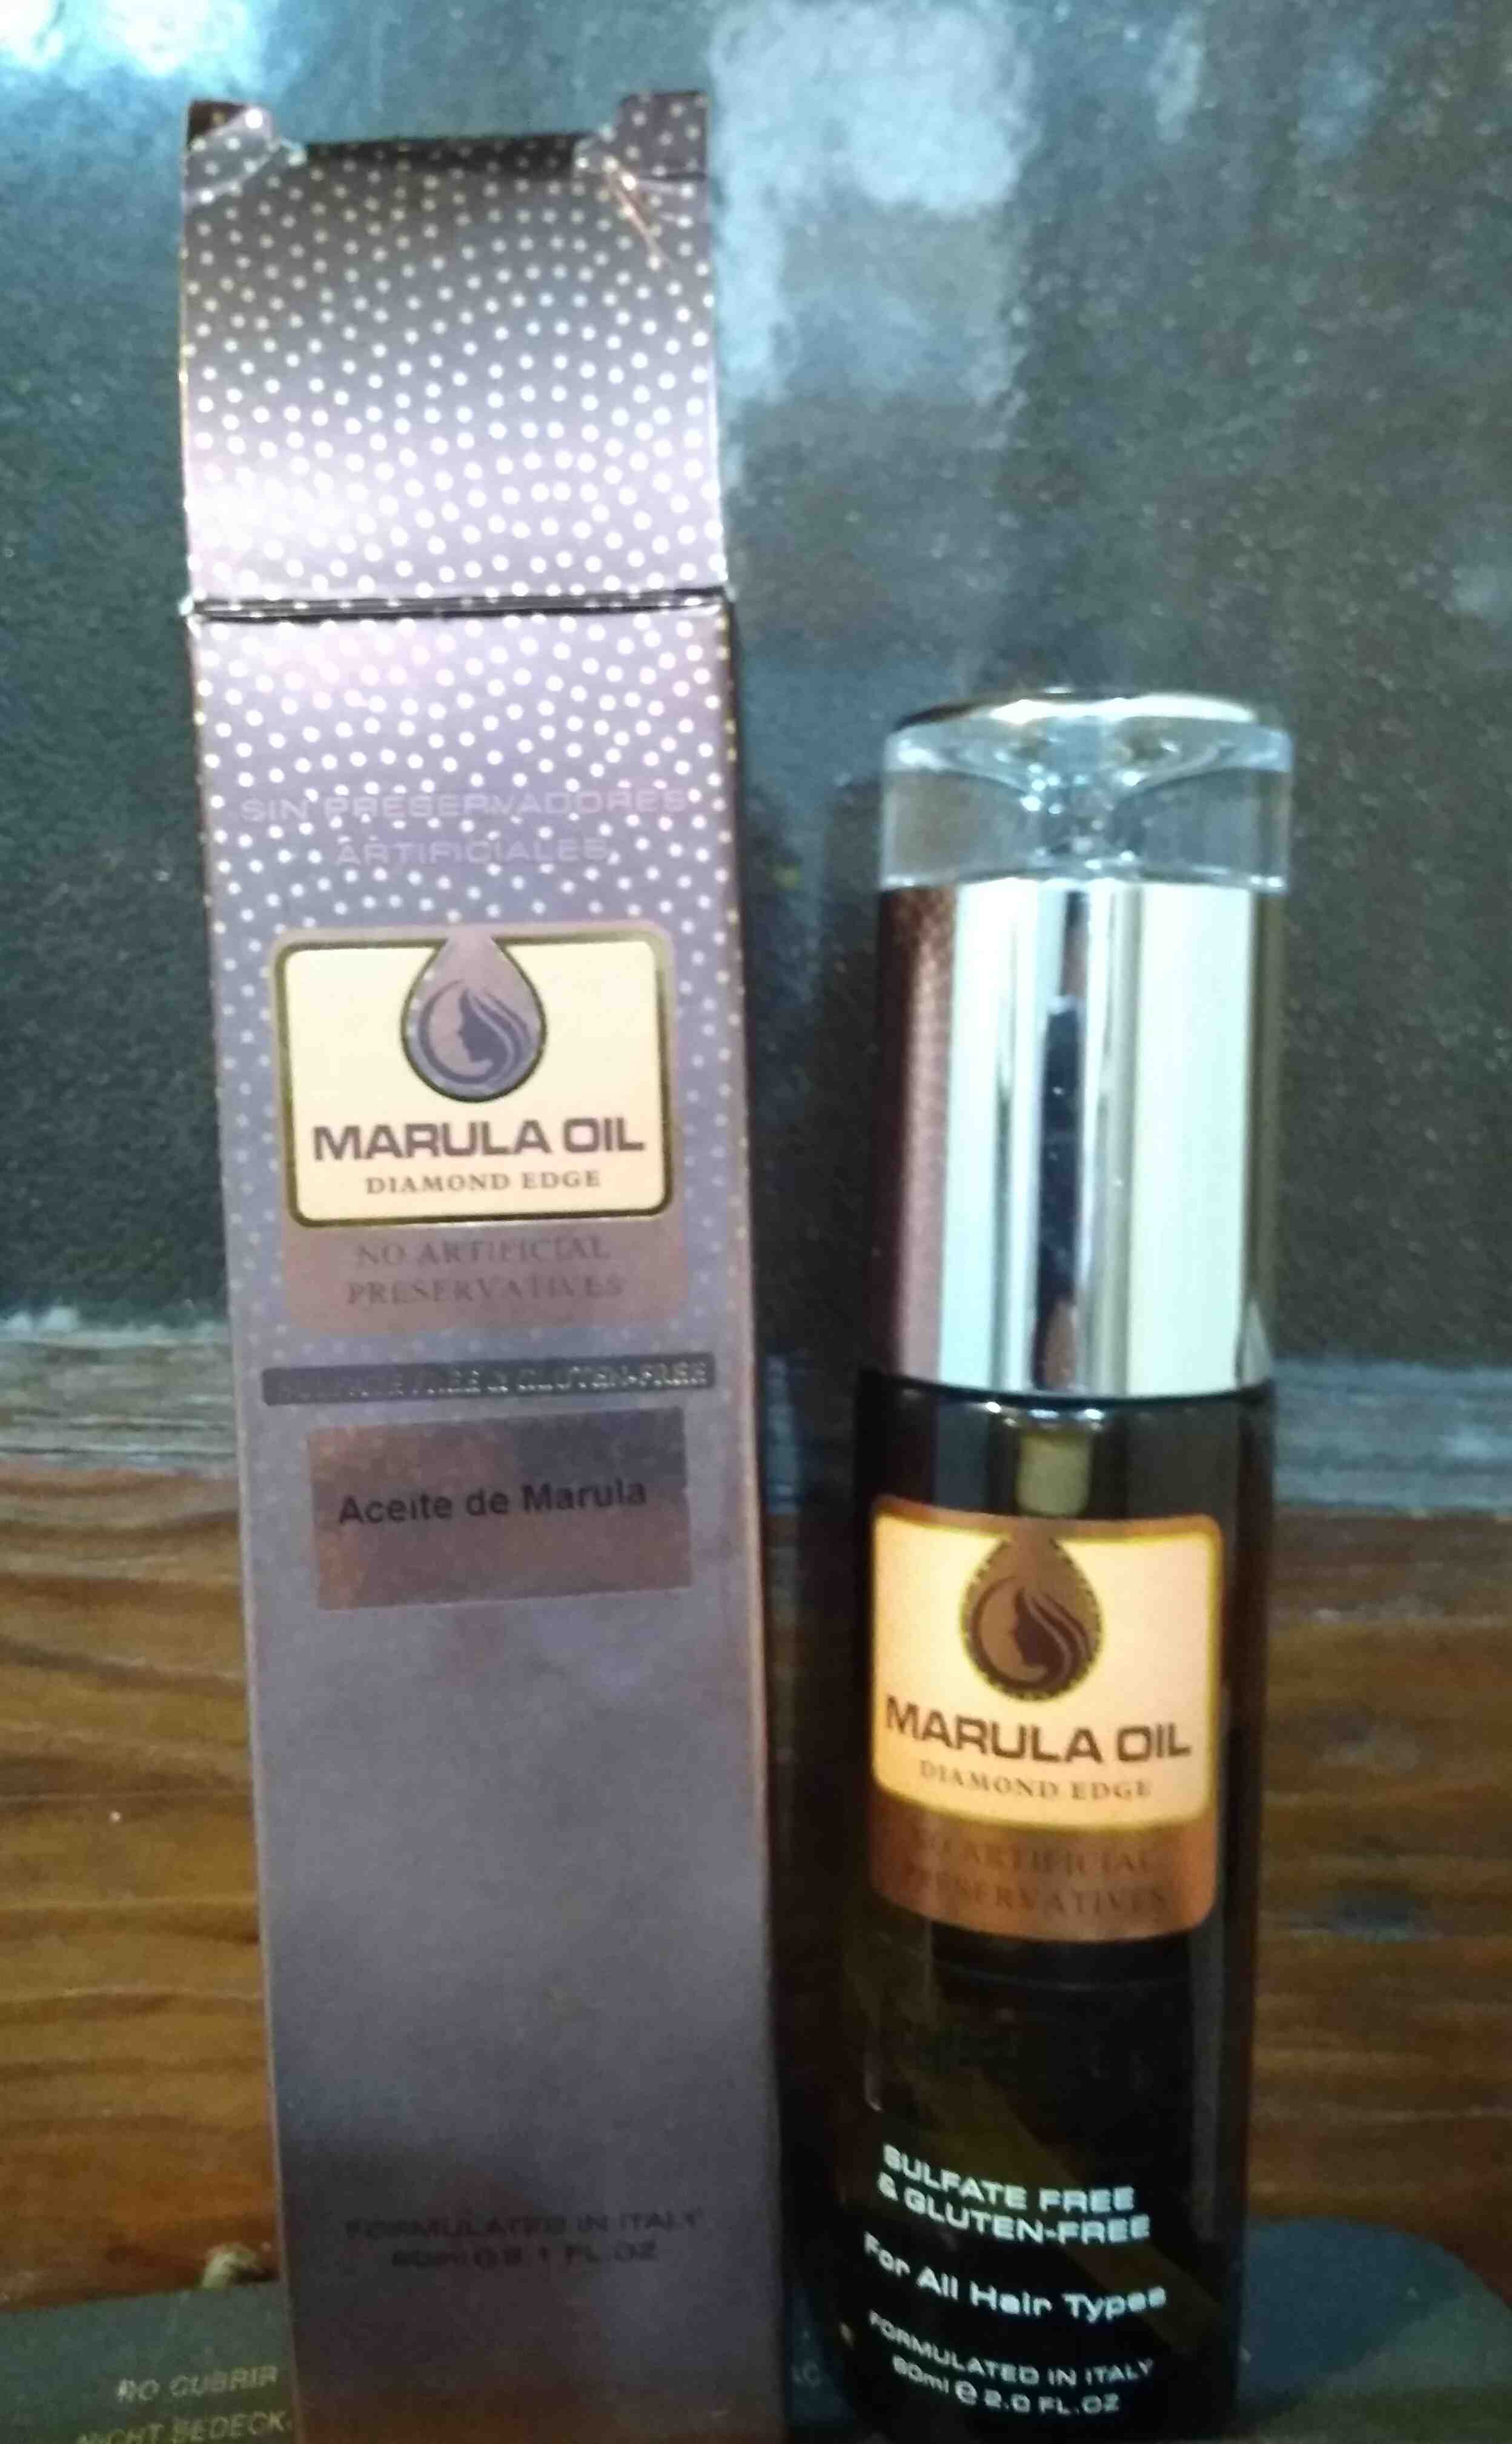 Marula oil diamond edge - Produto - en